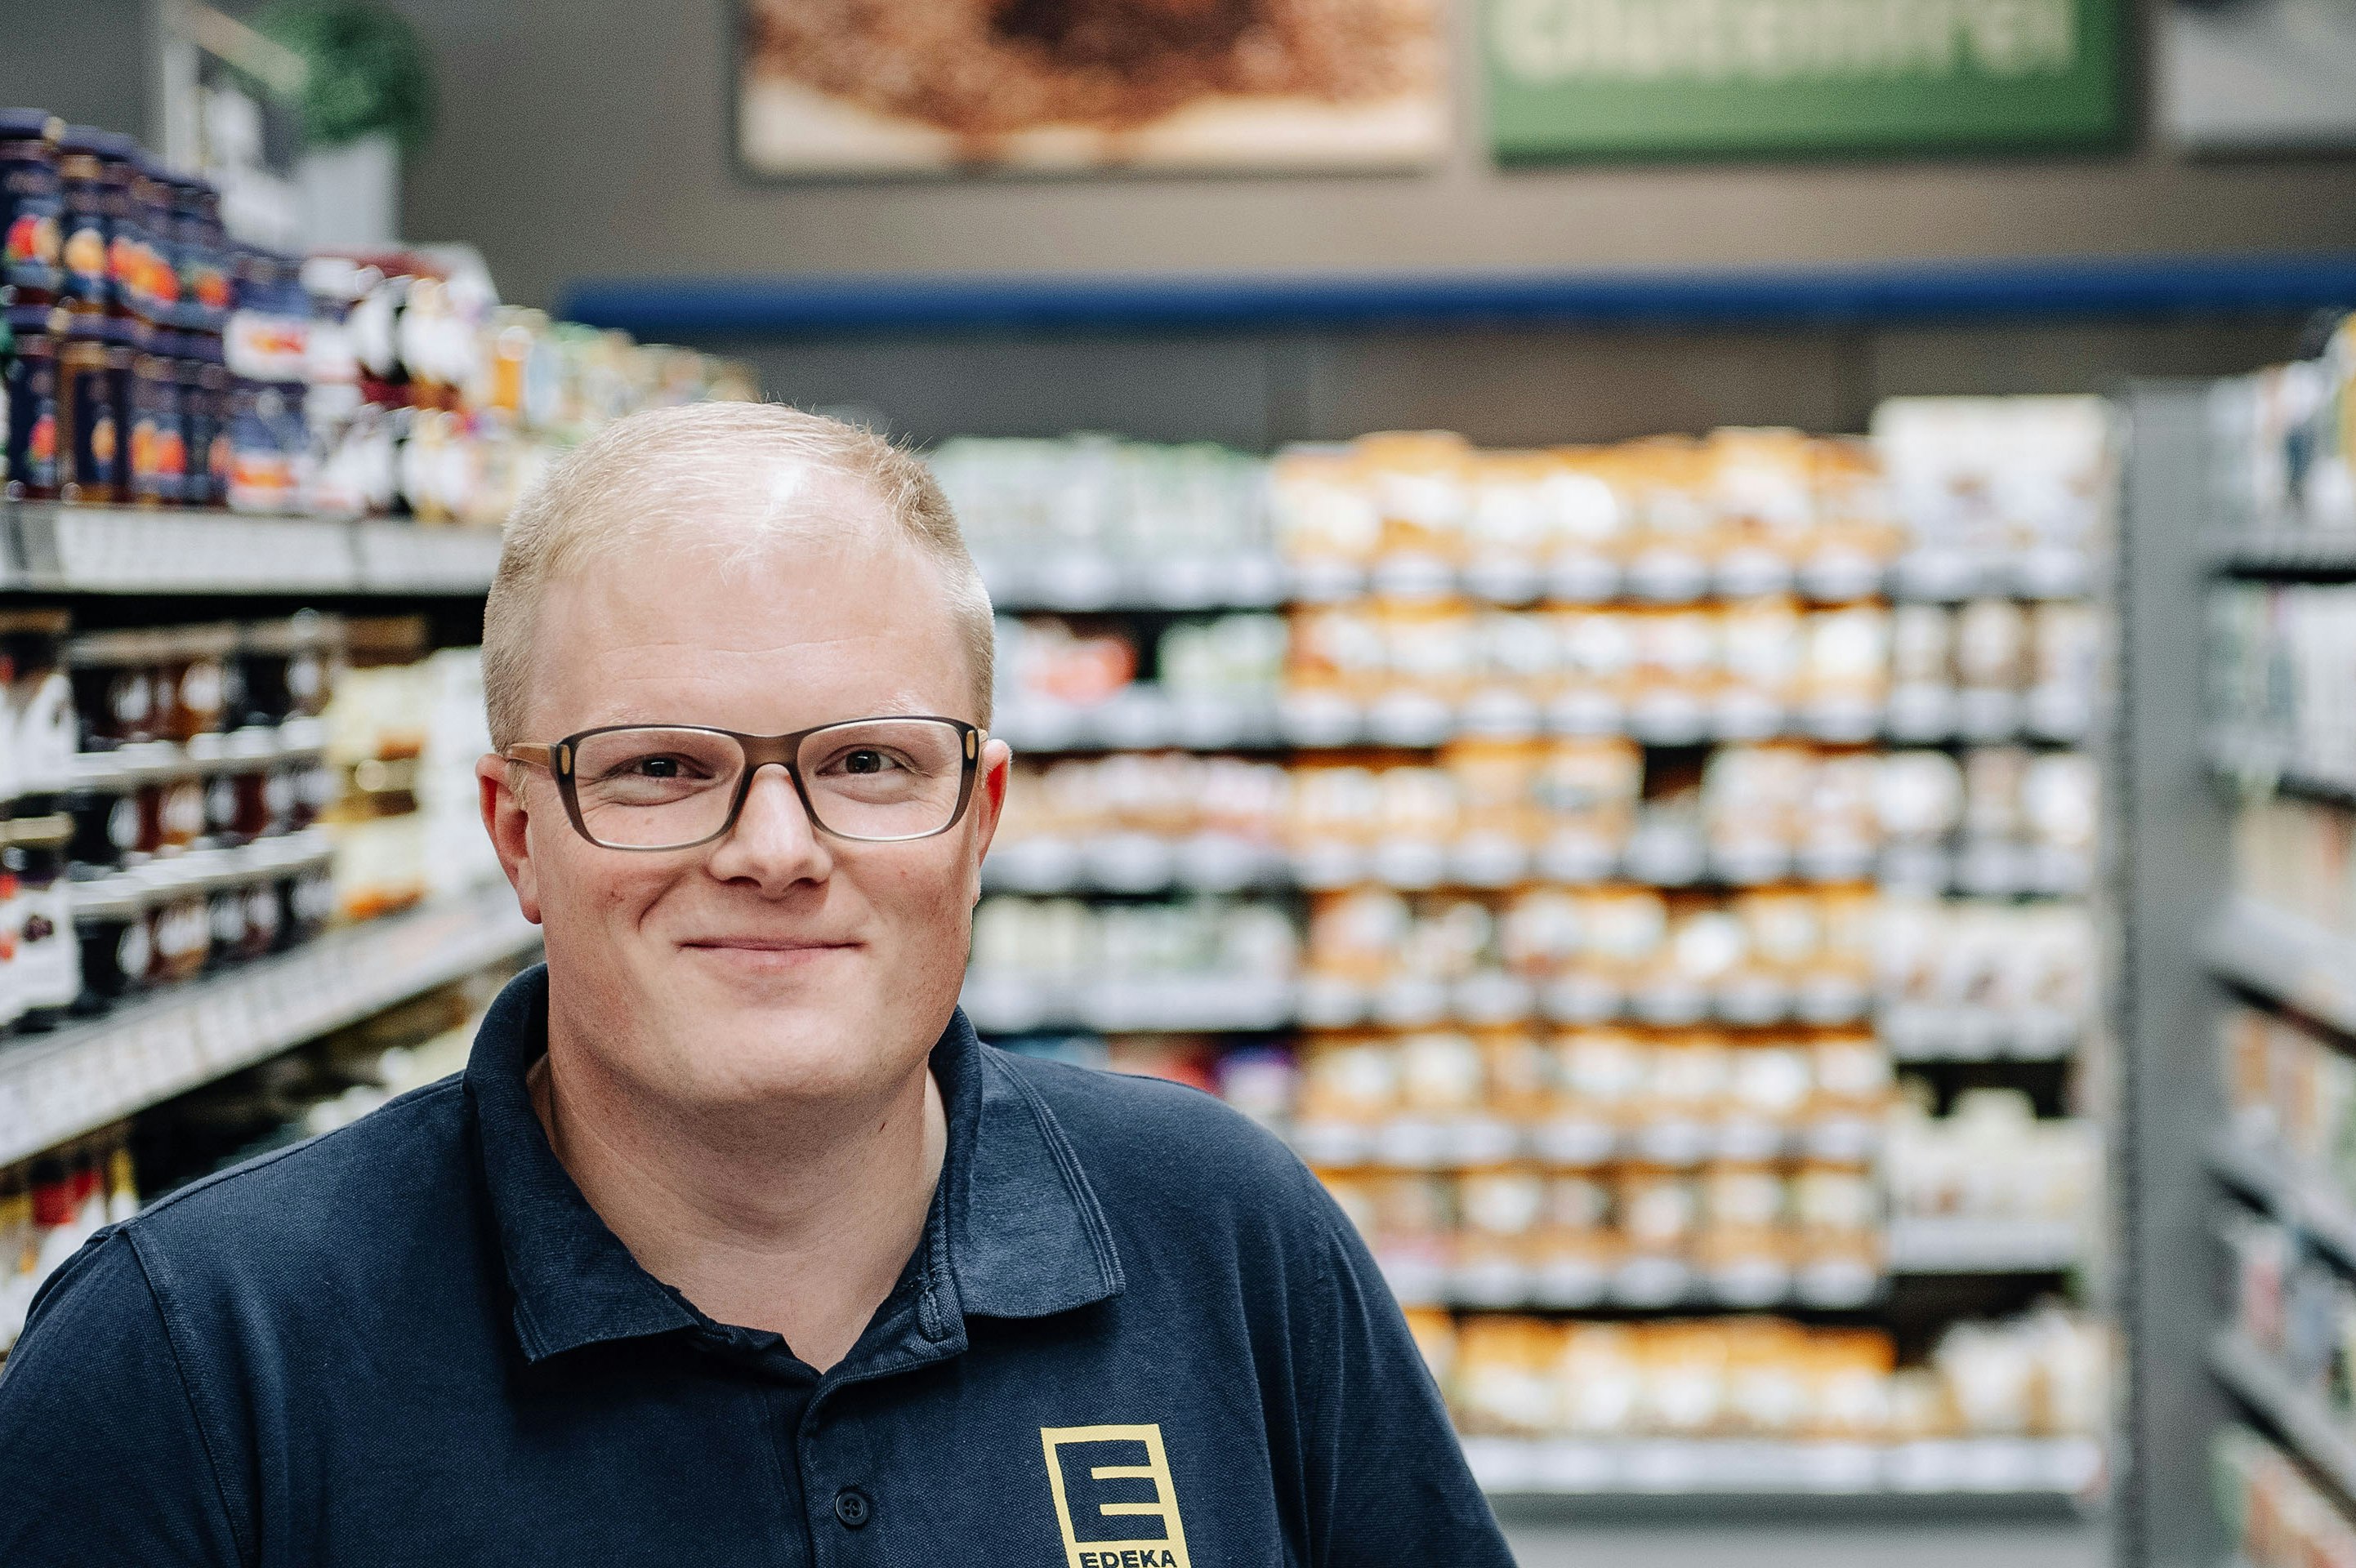 Benedikt Paul steht lächelnd vor einem Supermarktregal